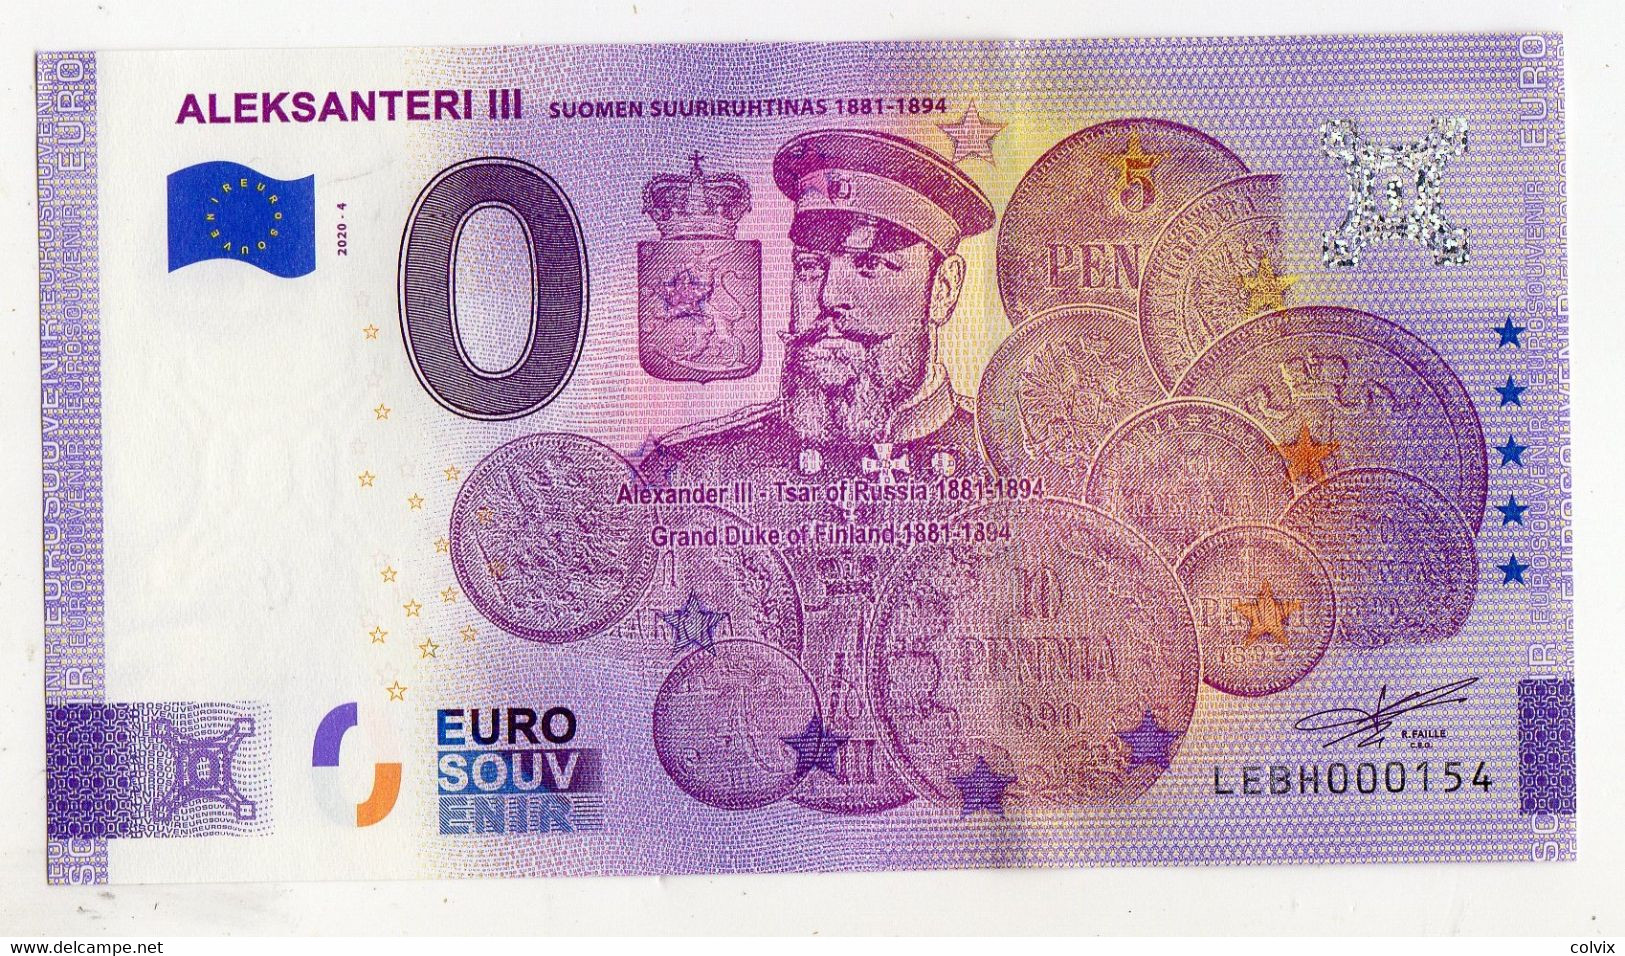 2020-4 BILLET TOURISTIQUE FINLANDE 0 EURO SOUVENIR N° LEBH000154 ALEKSANTERI III (monnaie) - Private Proofs / Unofficial